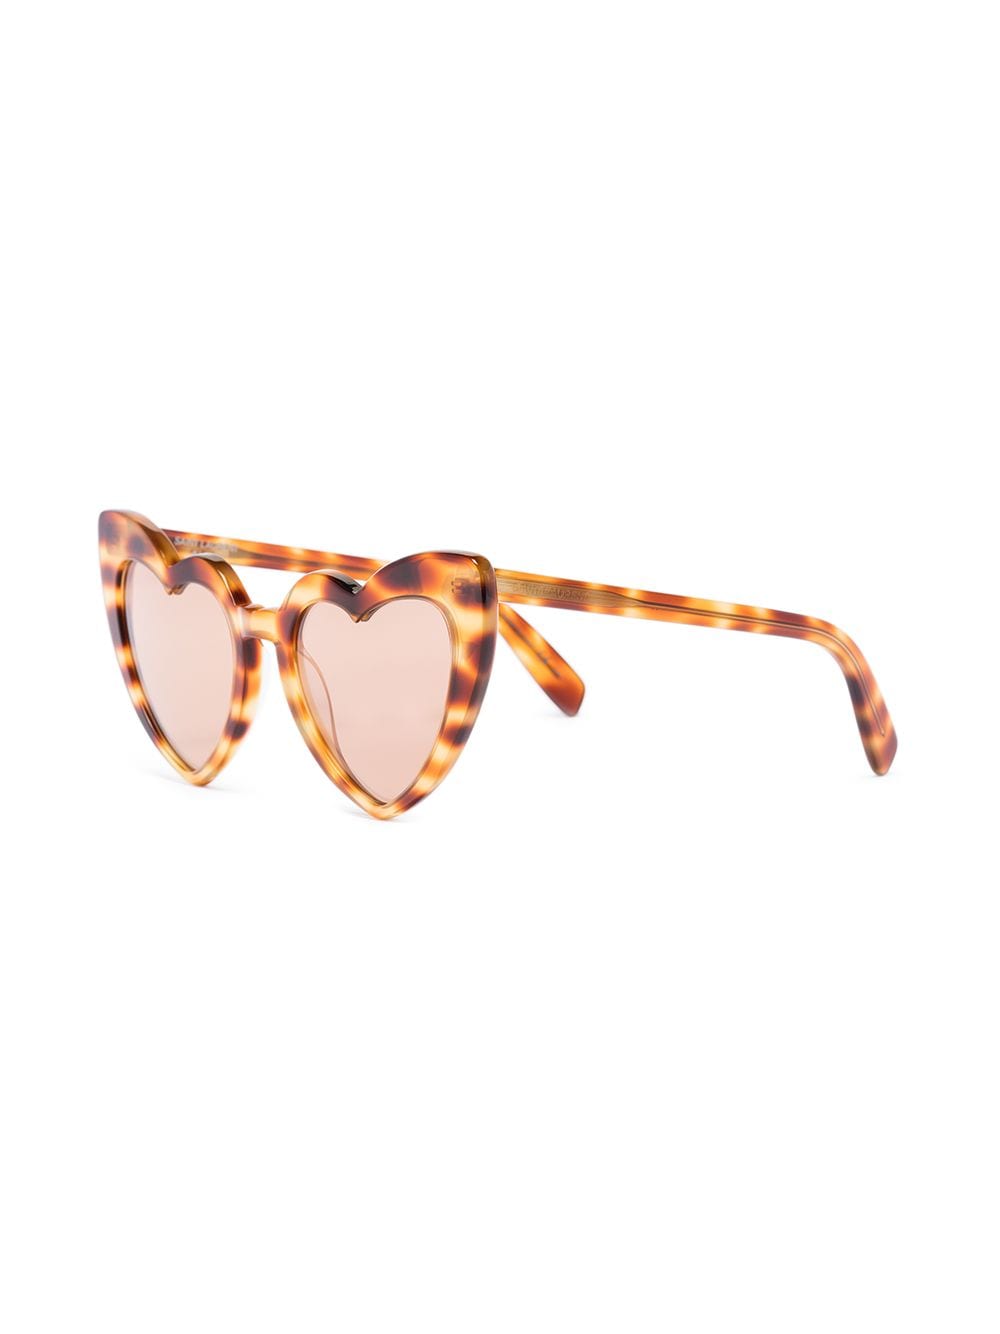 Saint Laurent Eyewear New Wave Loulou zonnebril met schildpadschild design - Bruin